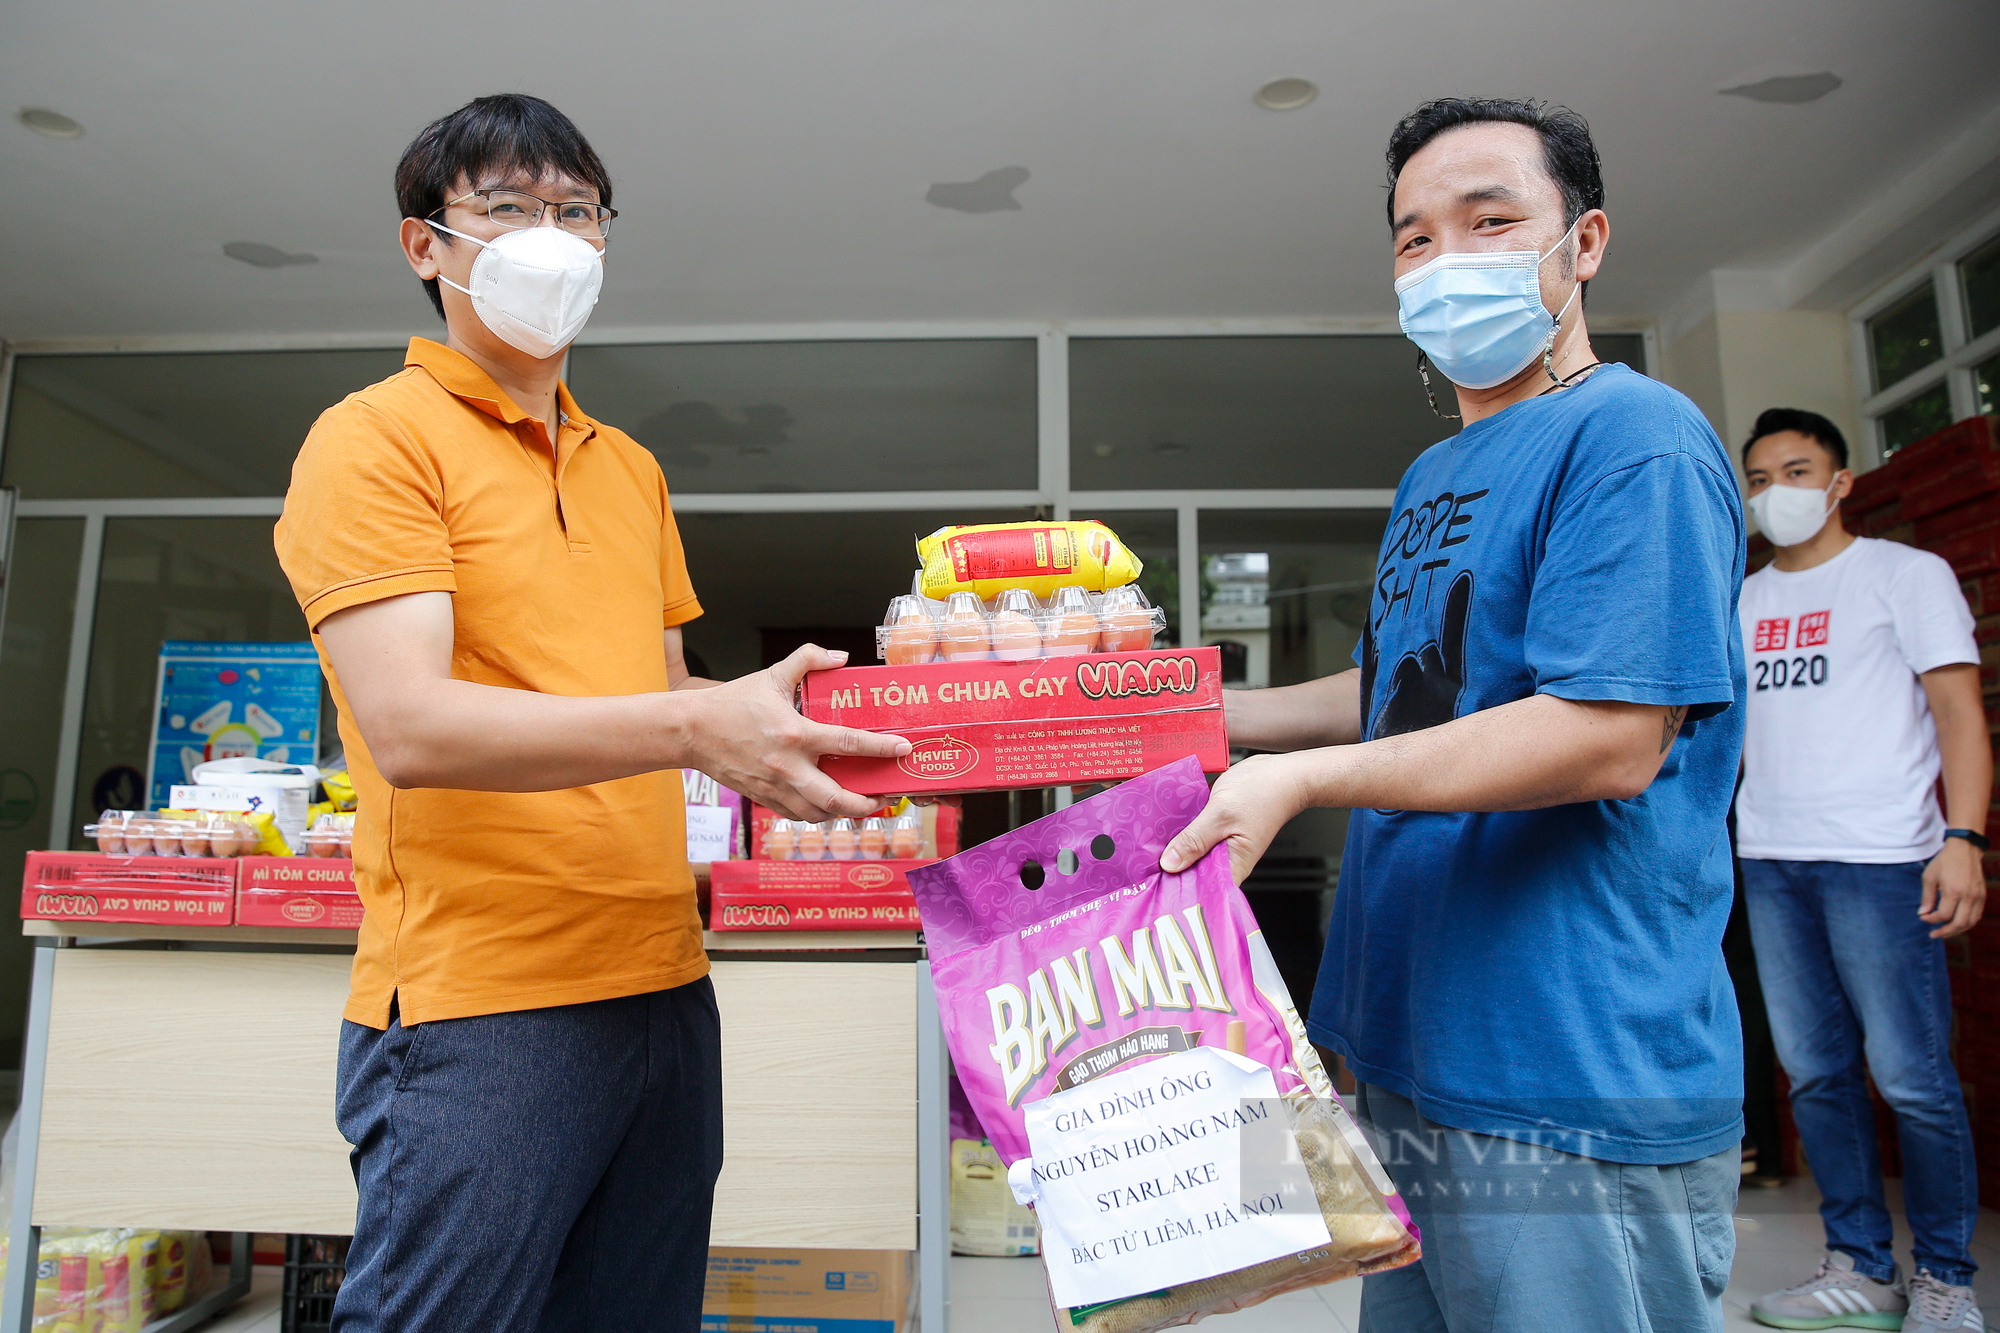 Ảnh: Sinh viên mắc kẹt tại Hà Nội xúc động nhận những món quà an sinh từ báo NTNN/Điện tử Dân Việt - Ảnh 2.